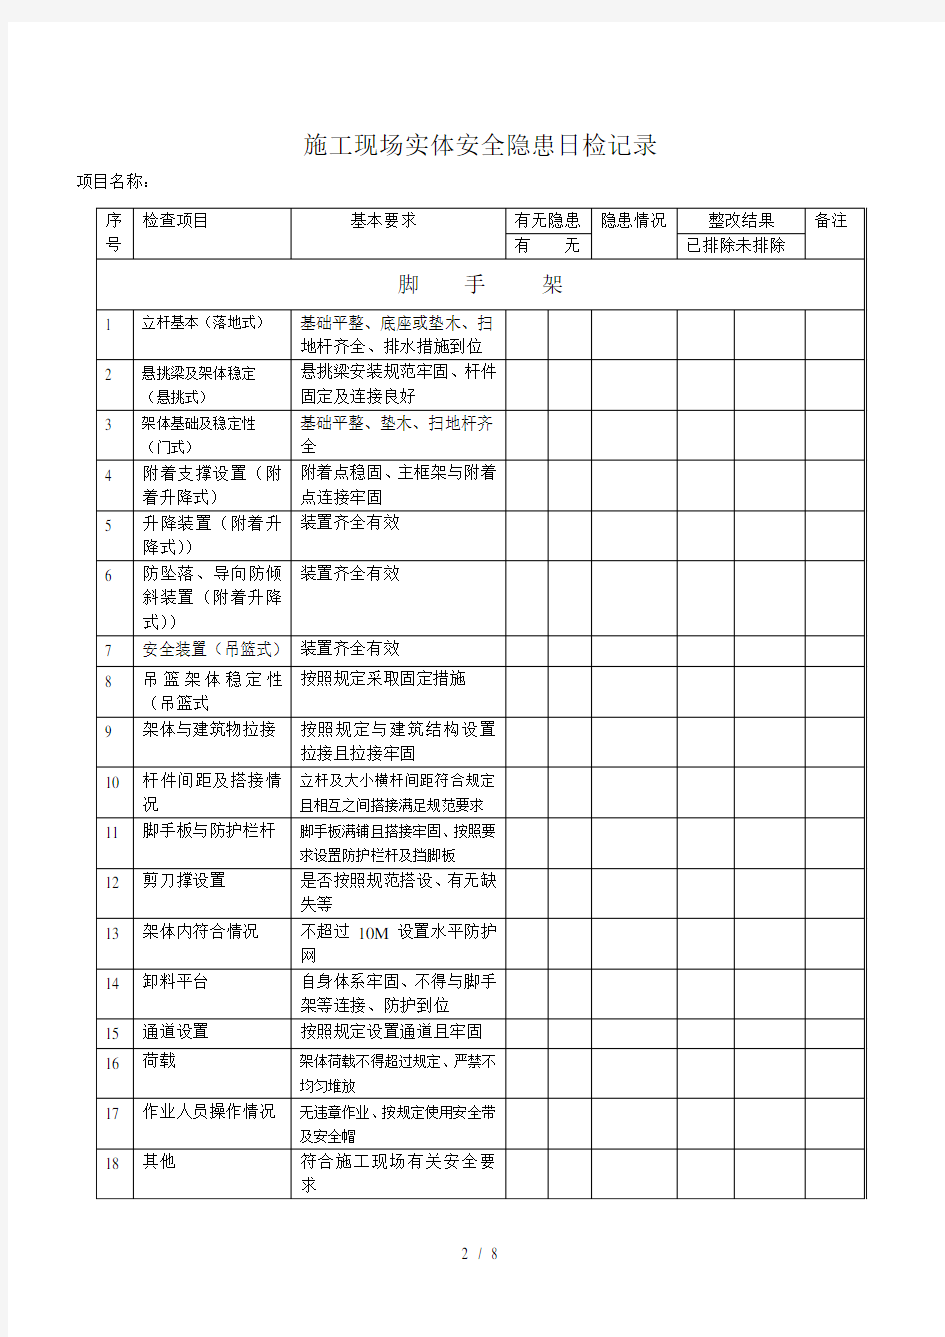 重庆安全资料每日检查记录表